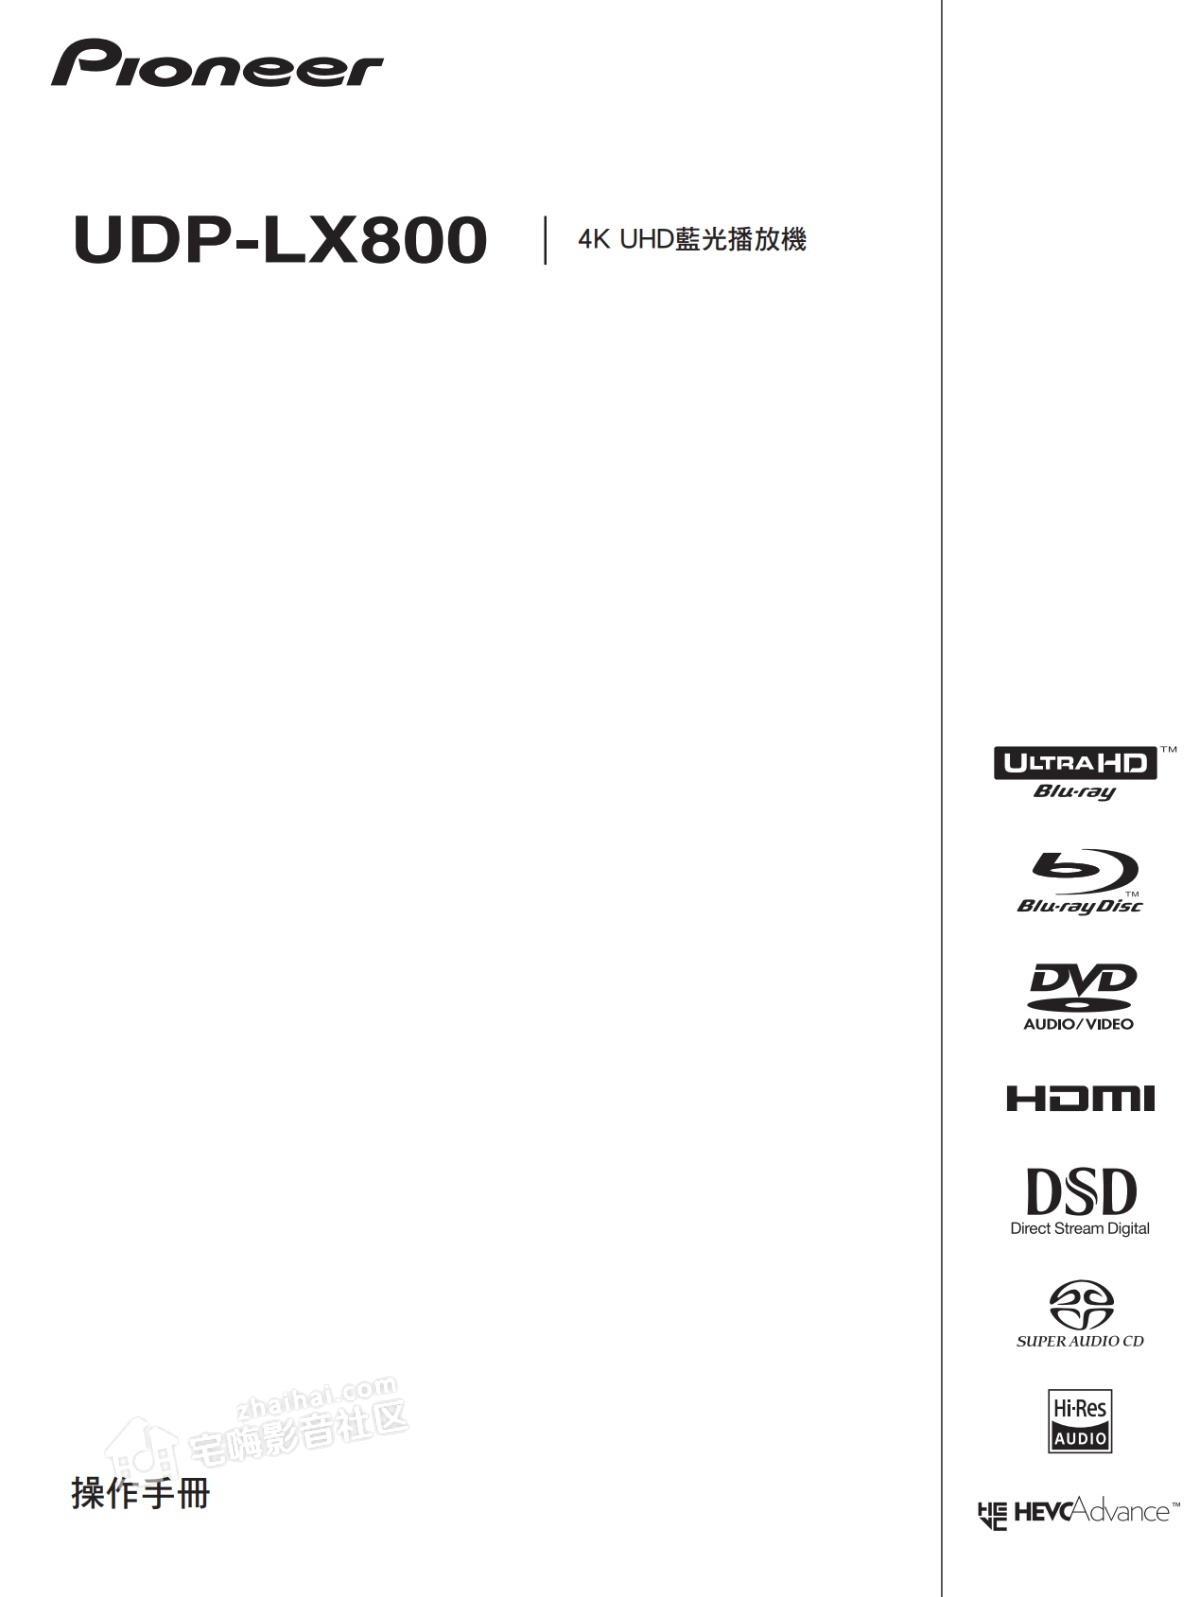 先锋 Pioneer UDP-LX800中文说明书使用指南.png